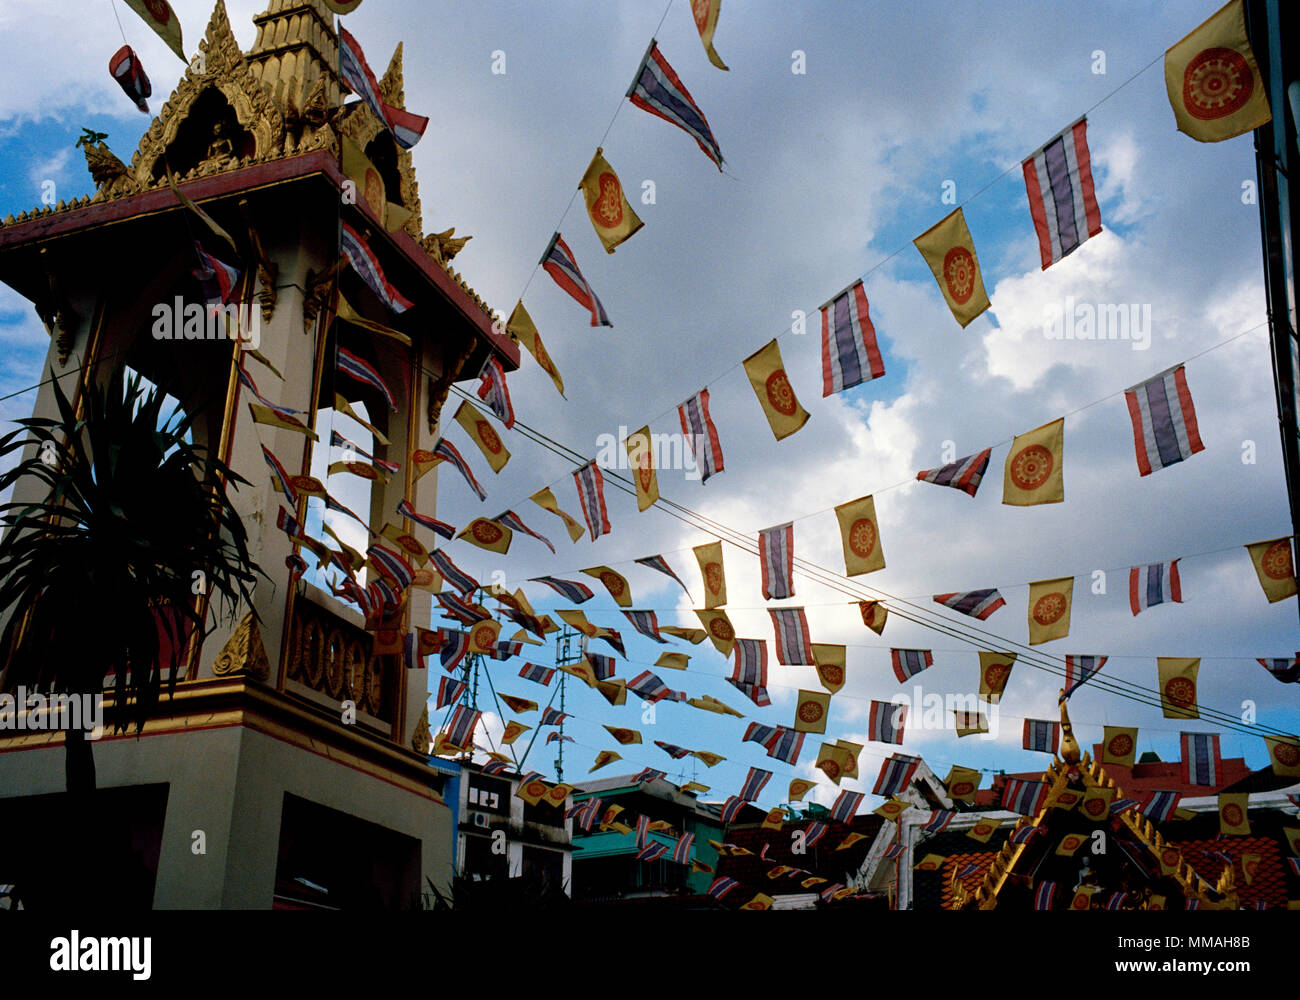 Gebetsfahnen an der buddhistischen Tempel - Wat Chamnihattakan Sam Ngam in Bangkok, Thailand in Südostasien im Fernen Osten. Buddhistische Kunst Kultur Reisen Stockfoto